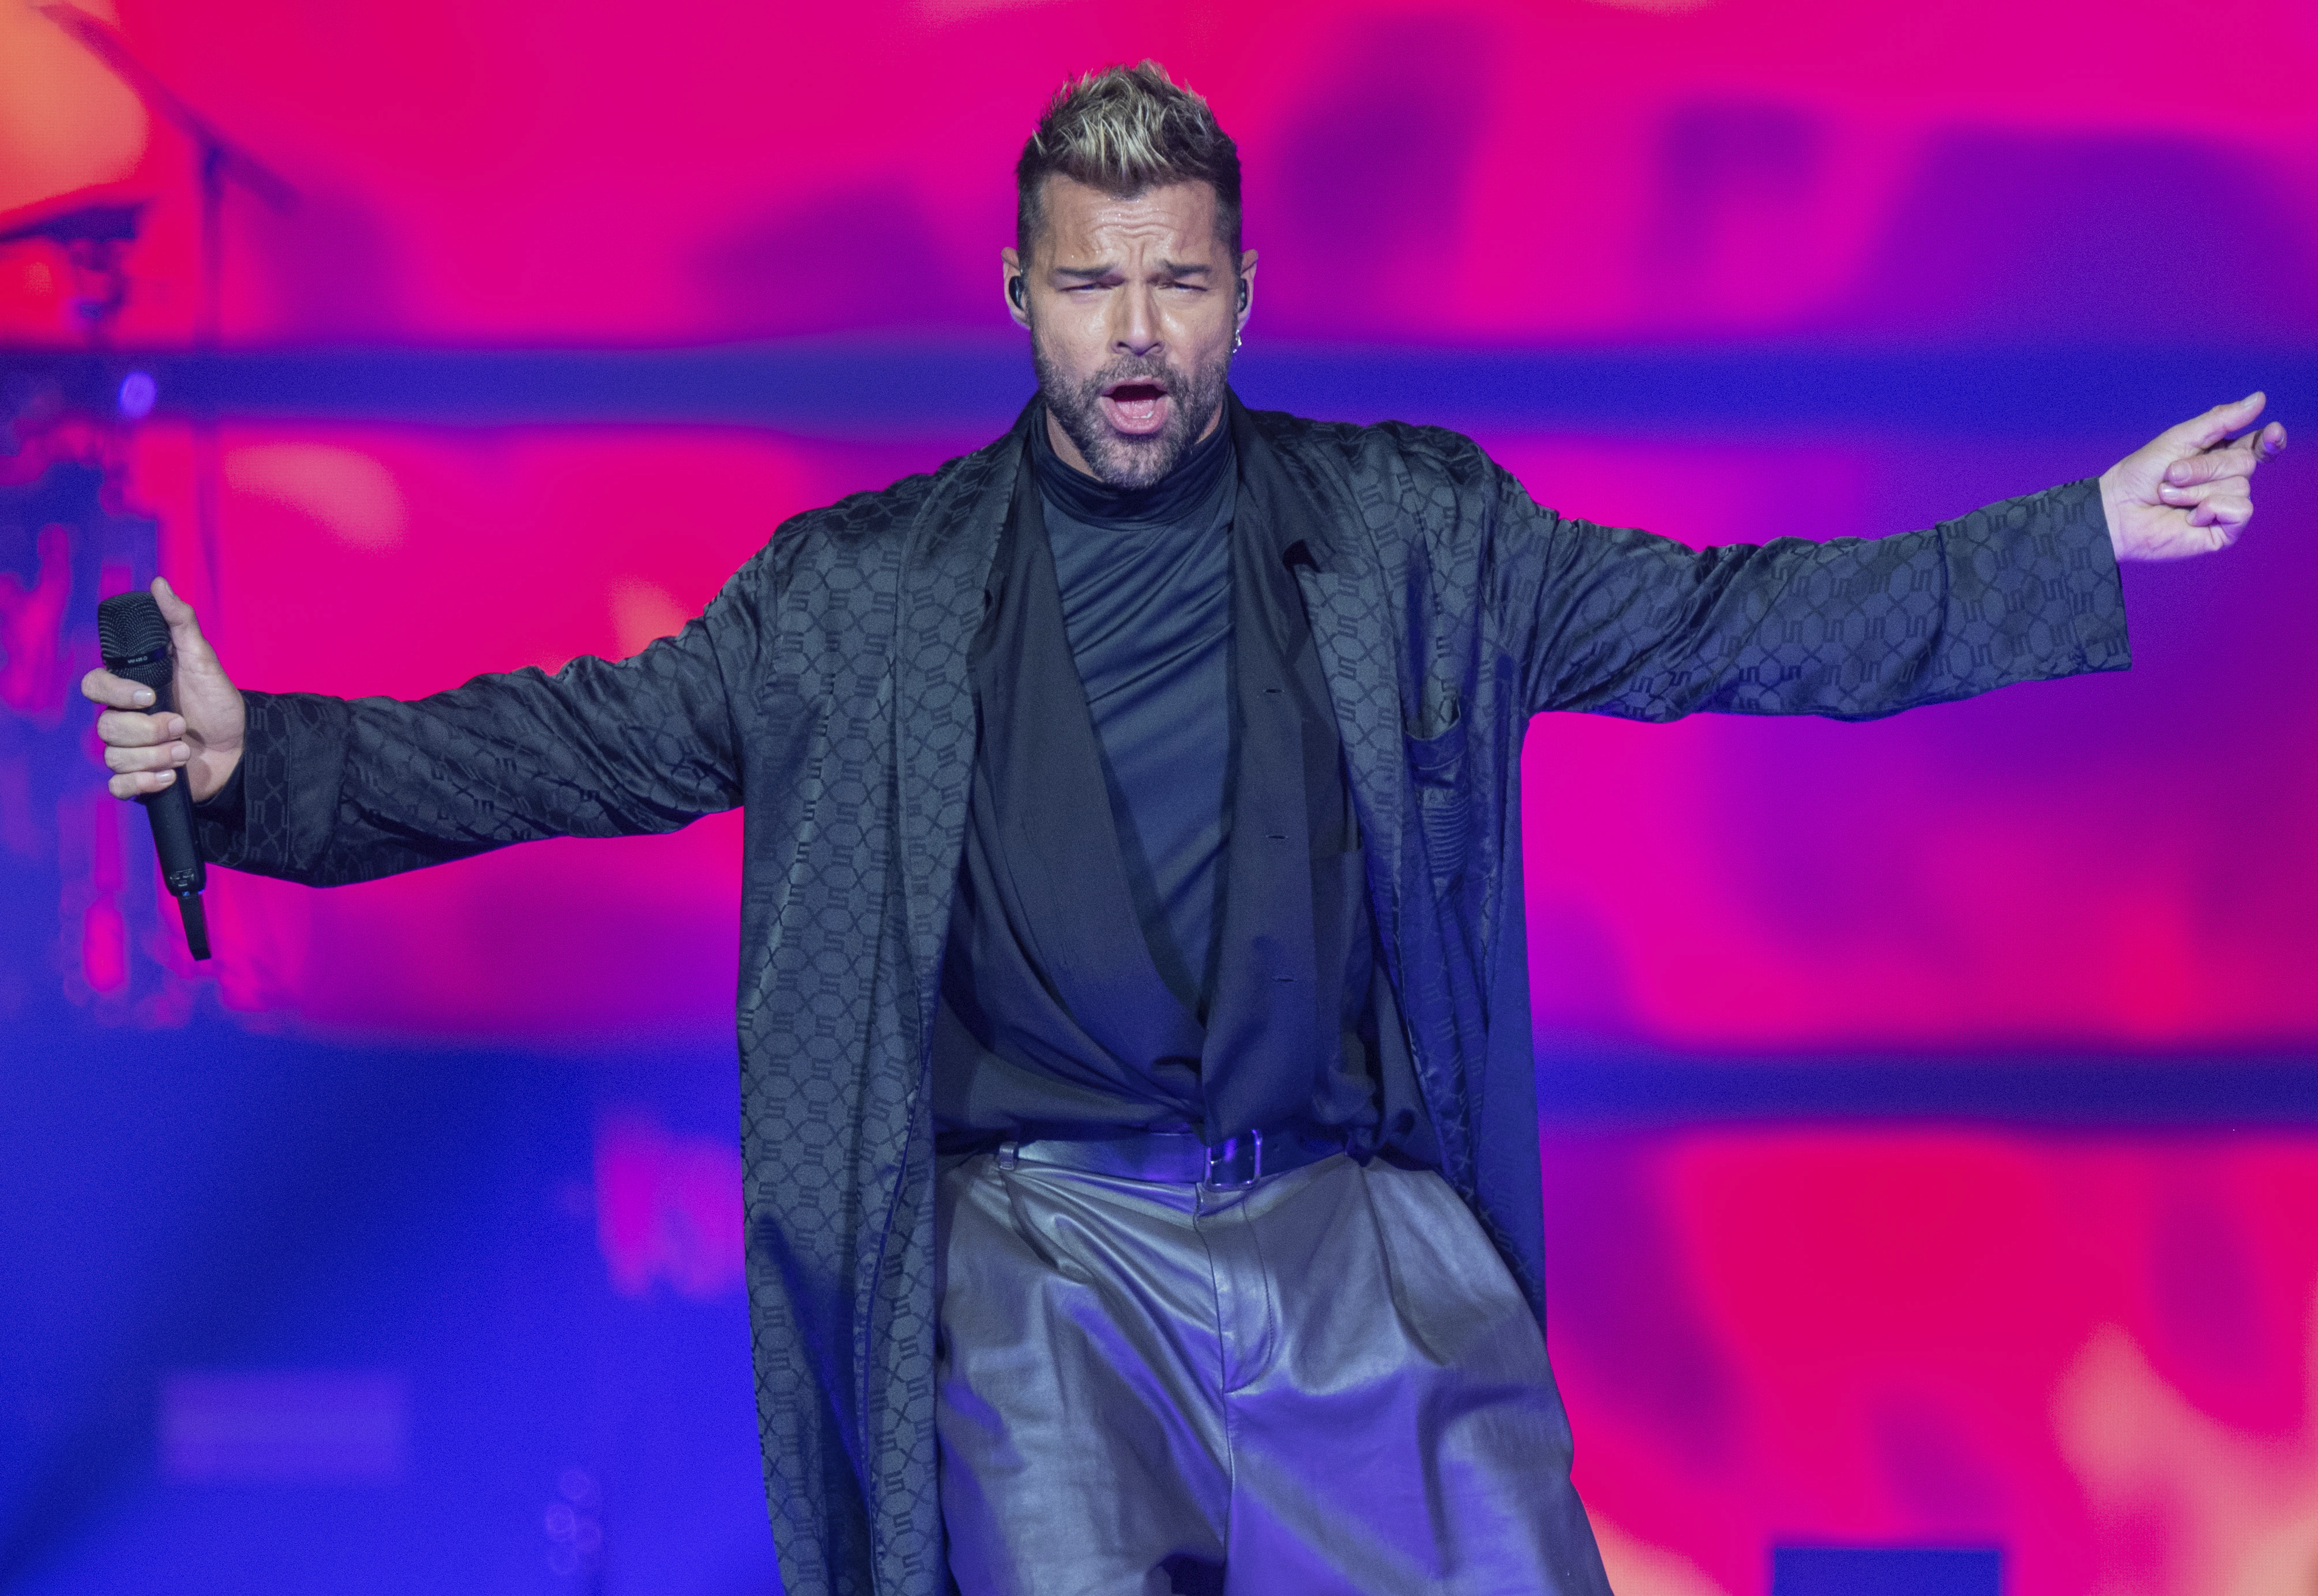 Declararon 'Livin la vida loca' de Ricky Martin como tesoro para la posteridad